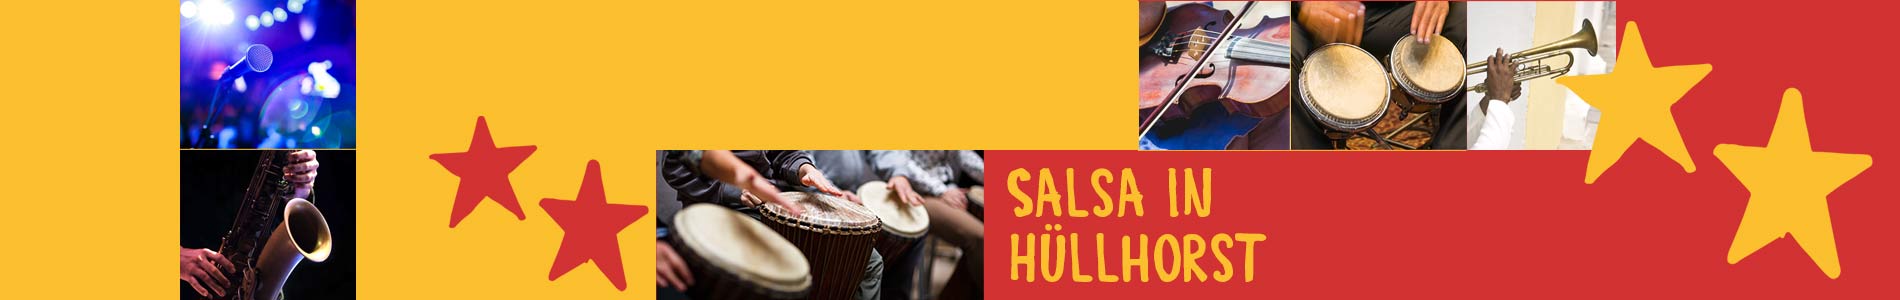 Salsa in Hüllhorst – Salsa lernen und tanzen, Tanzkurse, Partys, Veranstaltungen